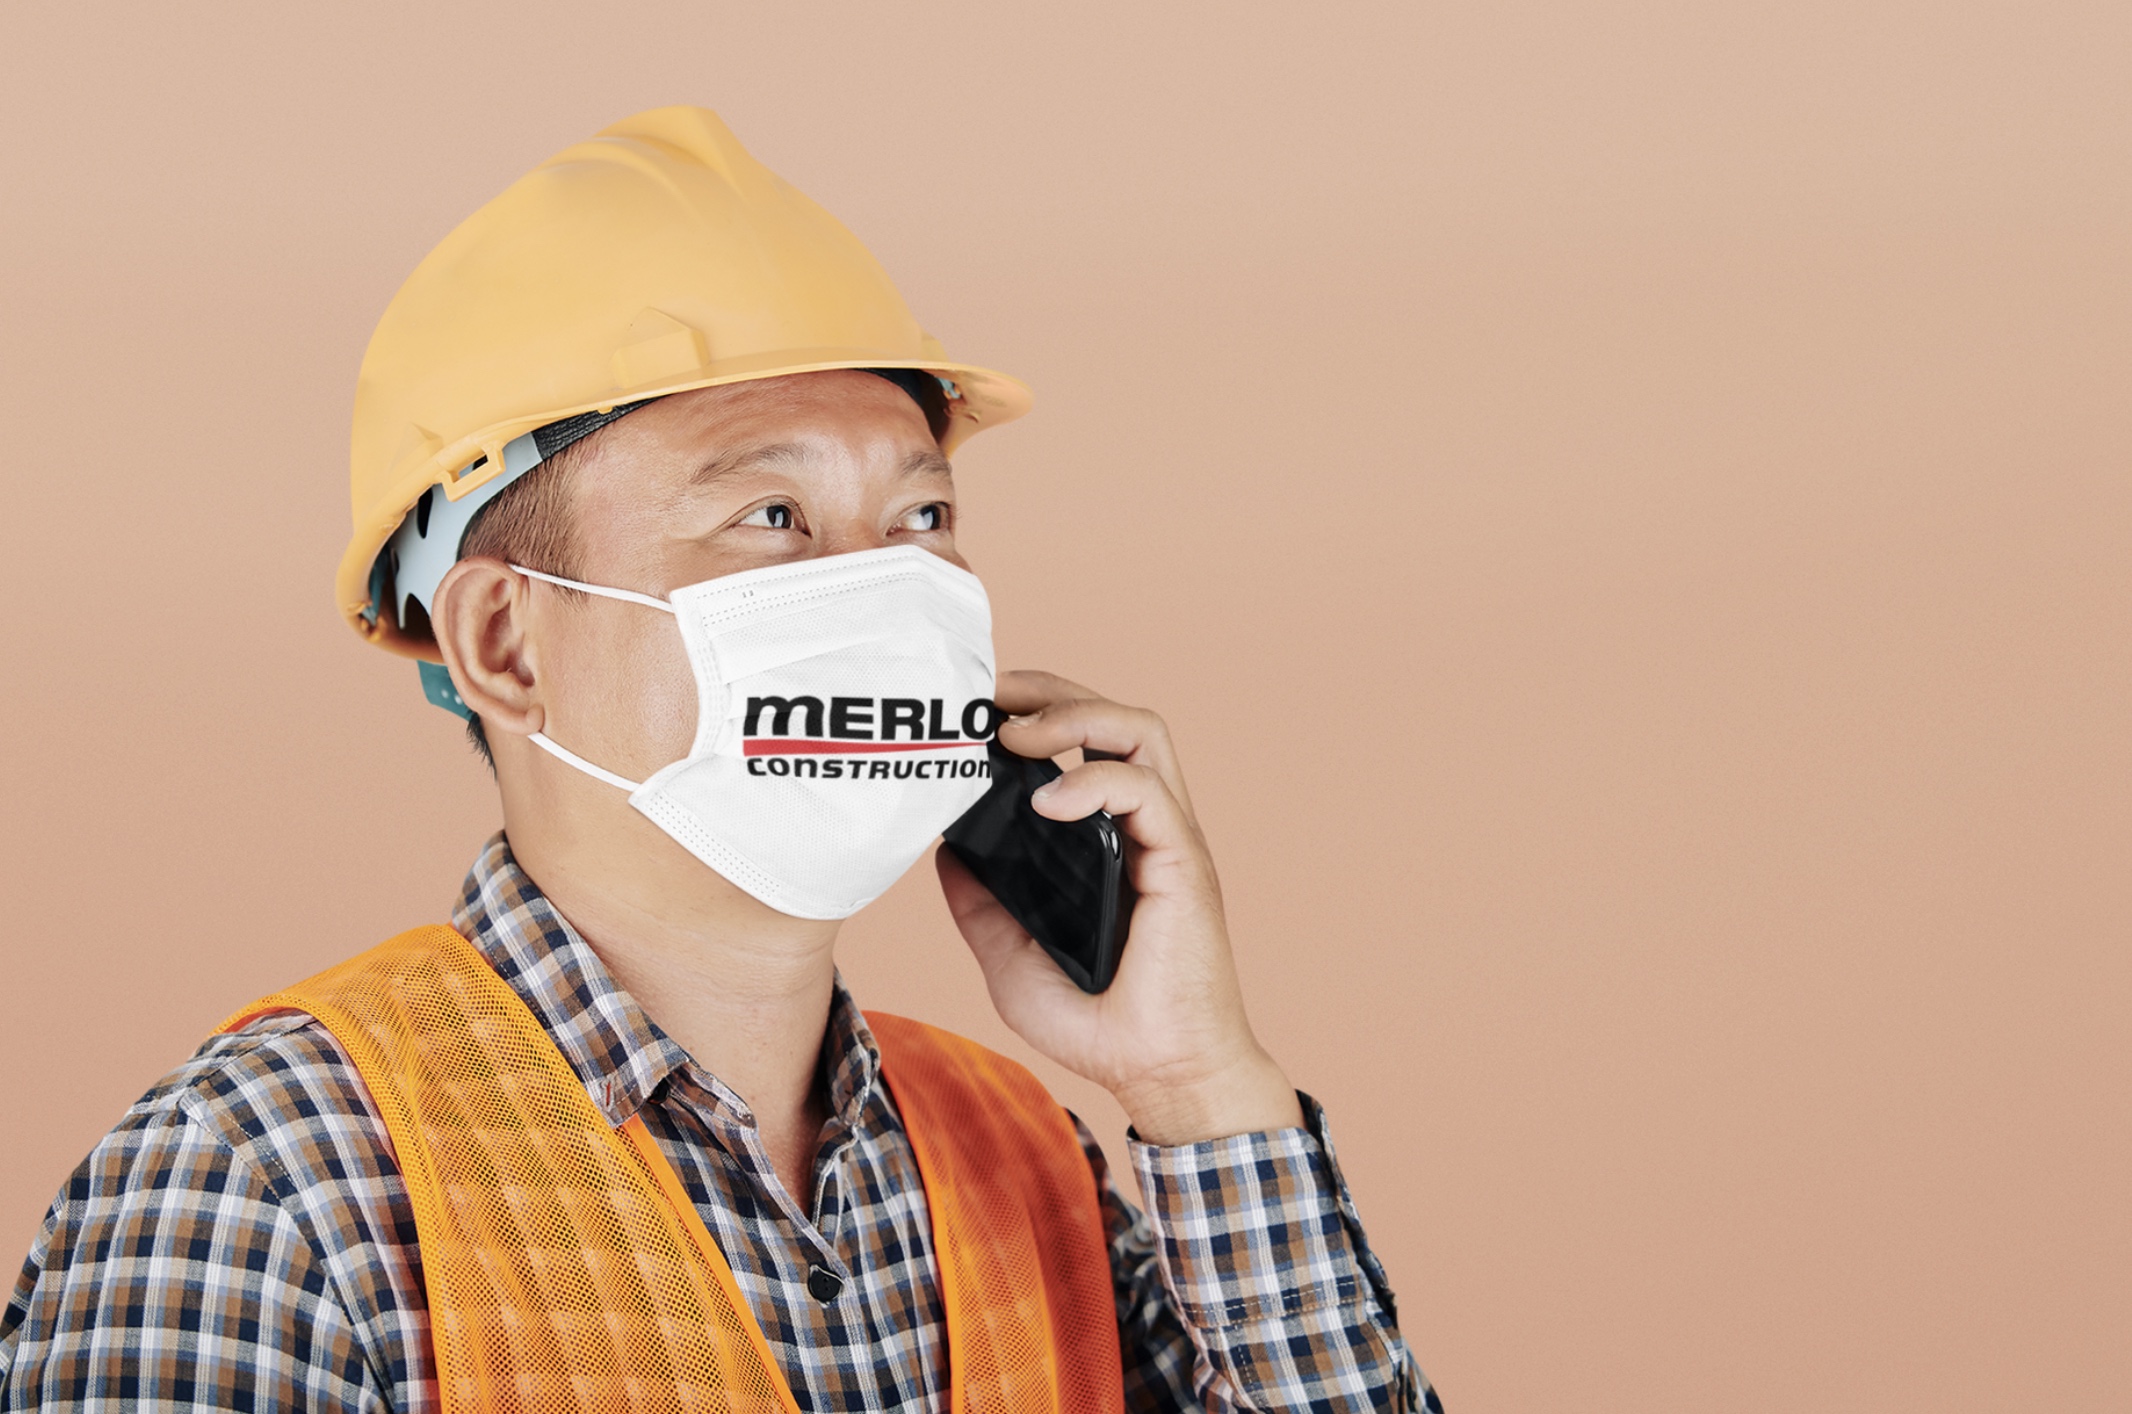 merlo construction worker